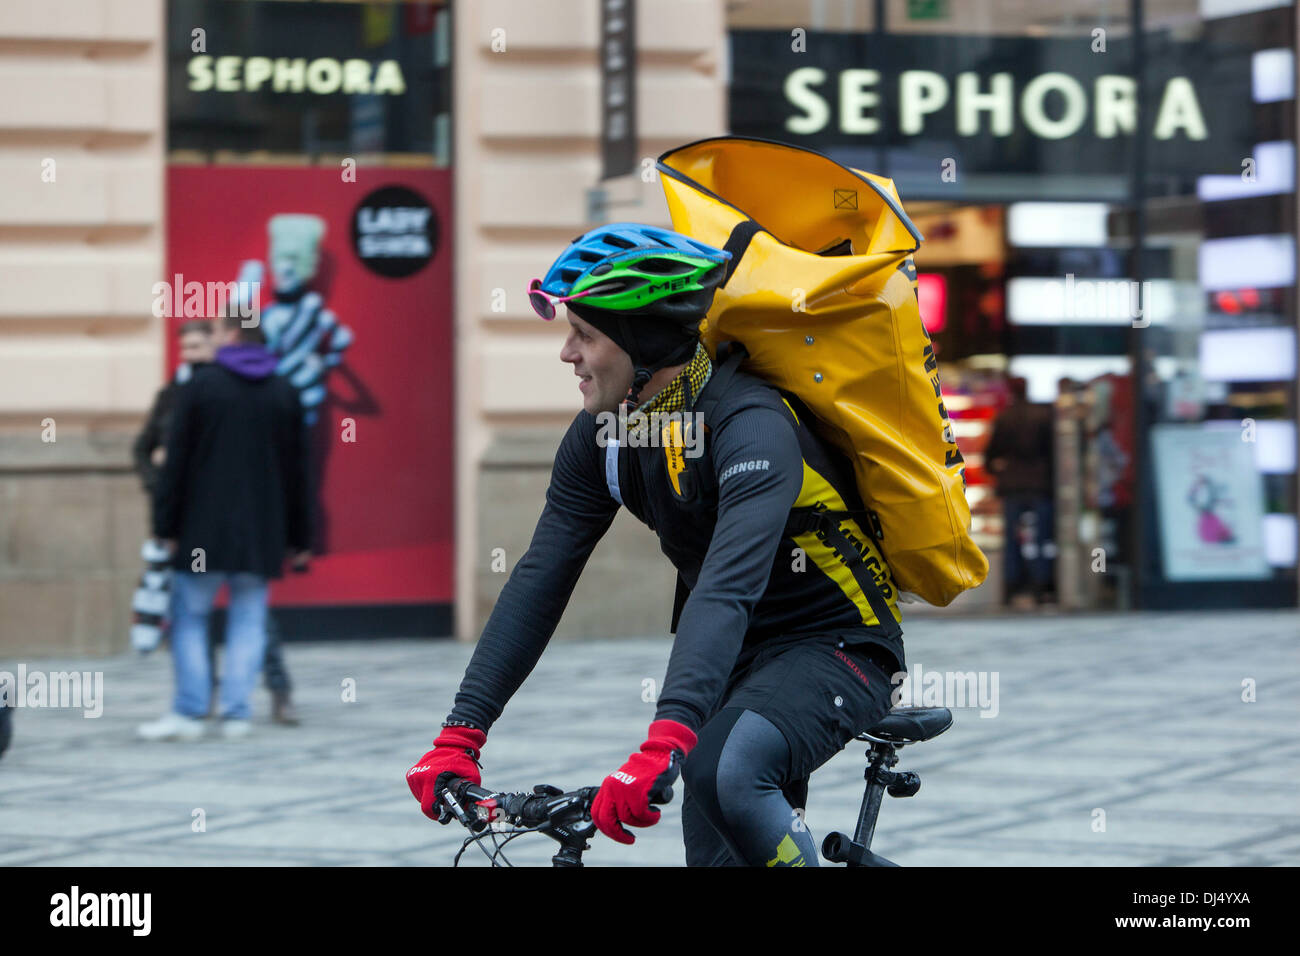 Biker, messenger, service de livraison dans le centre de Prague, République Tchèque, Europe Banque D'Images